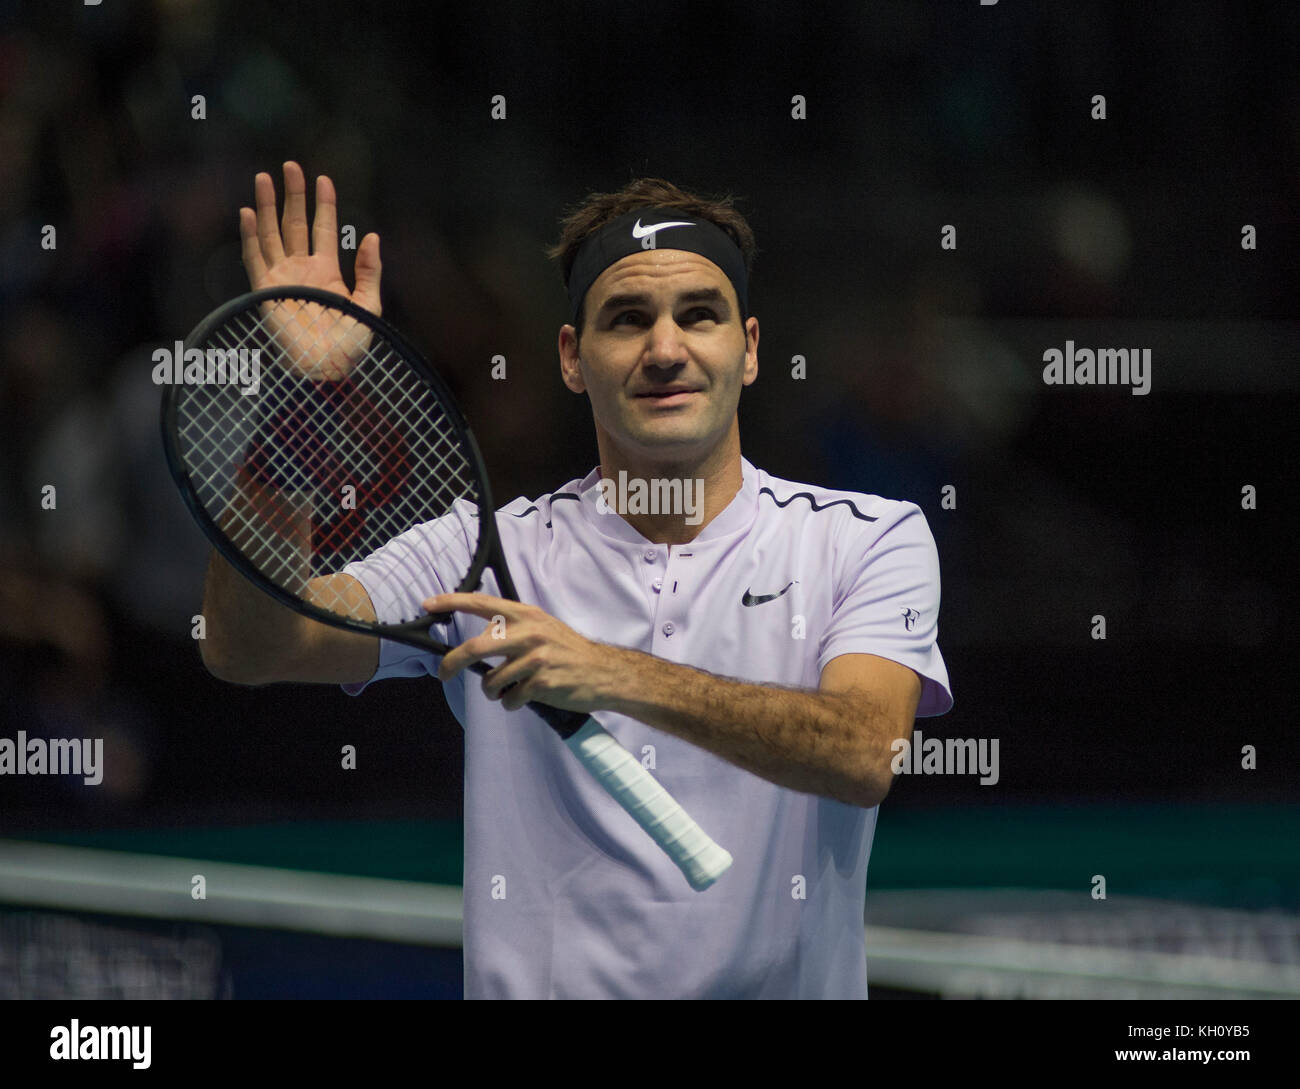 O2, London, Großbritannien. 12. November 2017. Tag 1 des Nitto ATP Finals, nachmittägiges Einzelspiel mit Roger Federer (SUI), Weltrangliste 2, gegen Jack Sock (USA), Samen 8. Endergebnis 6-4; 7-6 für Federer. Federer feiert seinen Sieg. Quelle: Malcolm Park/Alamy Live News. Stockfoto